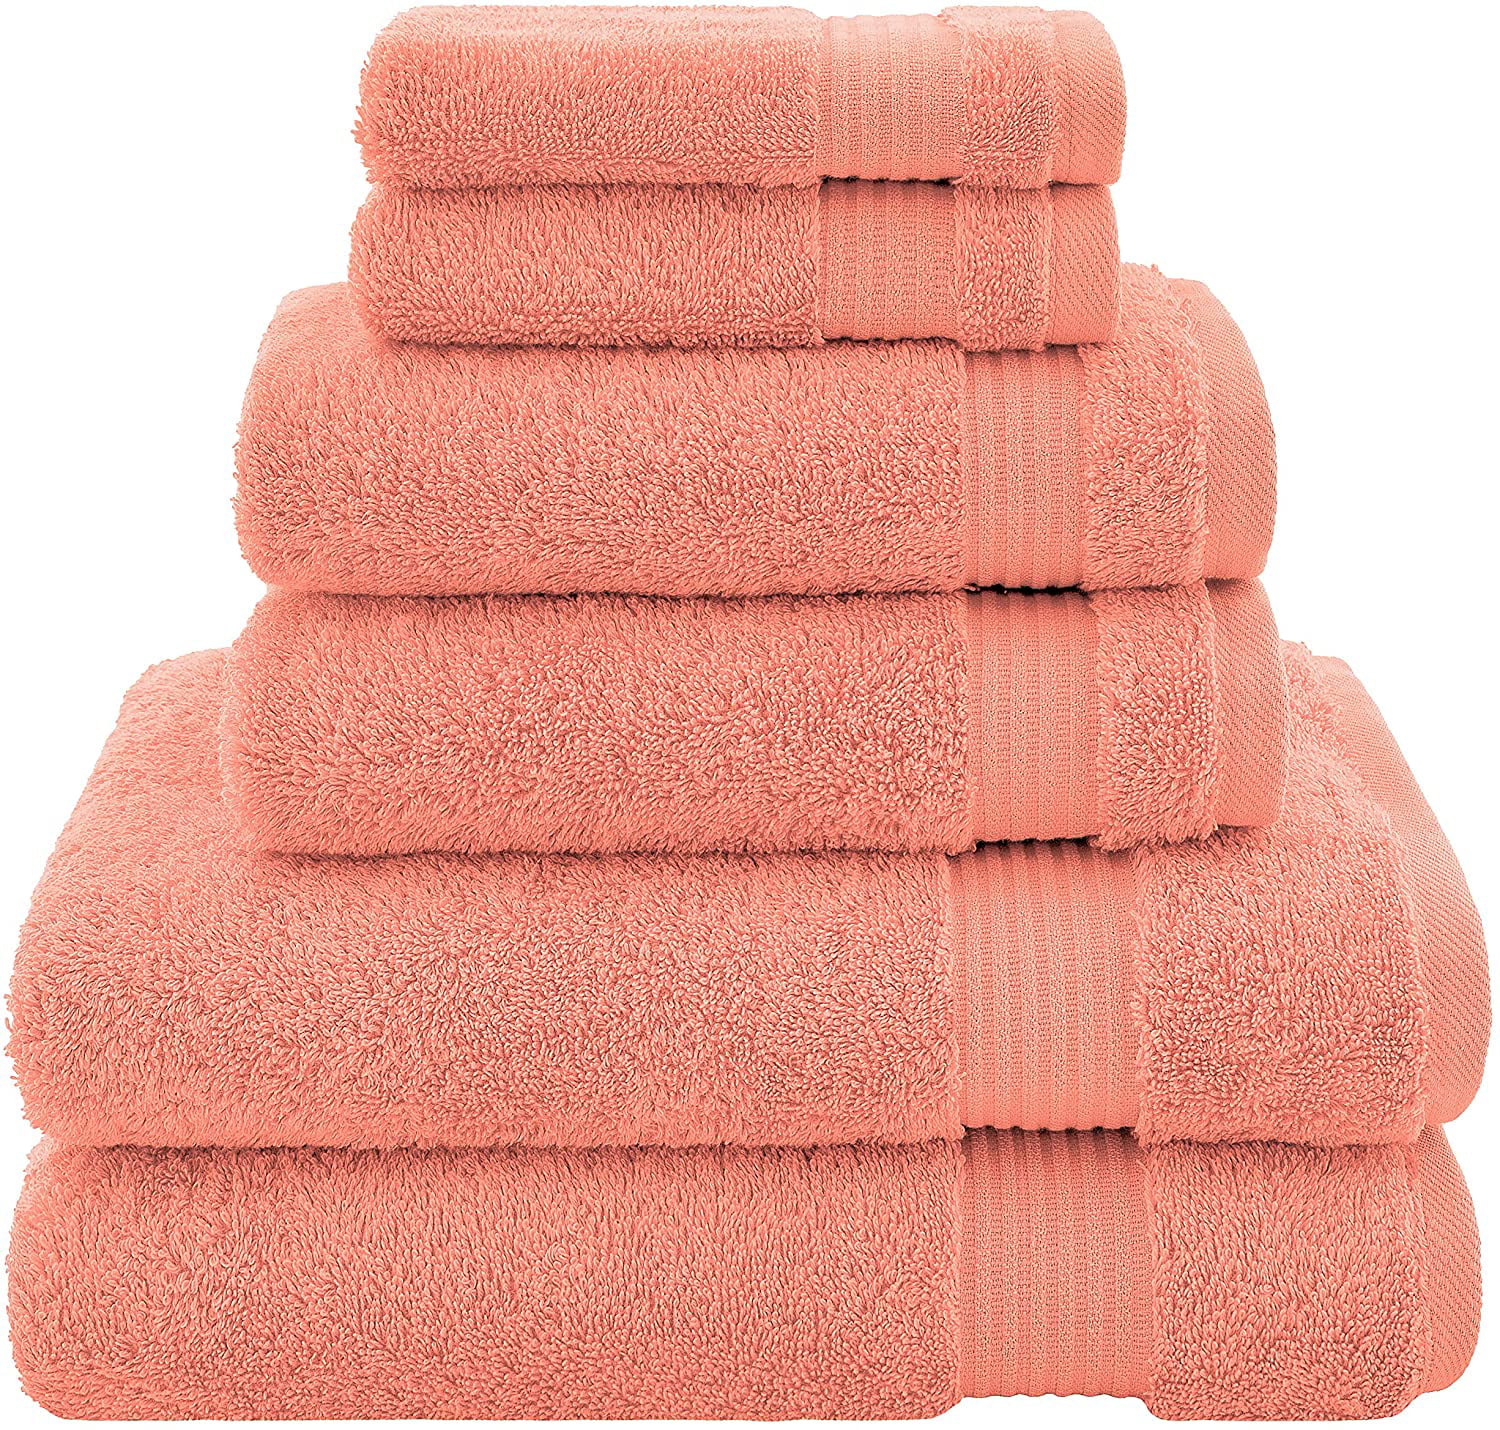 Extra Large Oversized Bath Towel 100% Cotton Turkish Towel Orange 